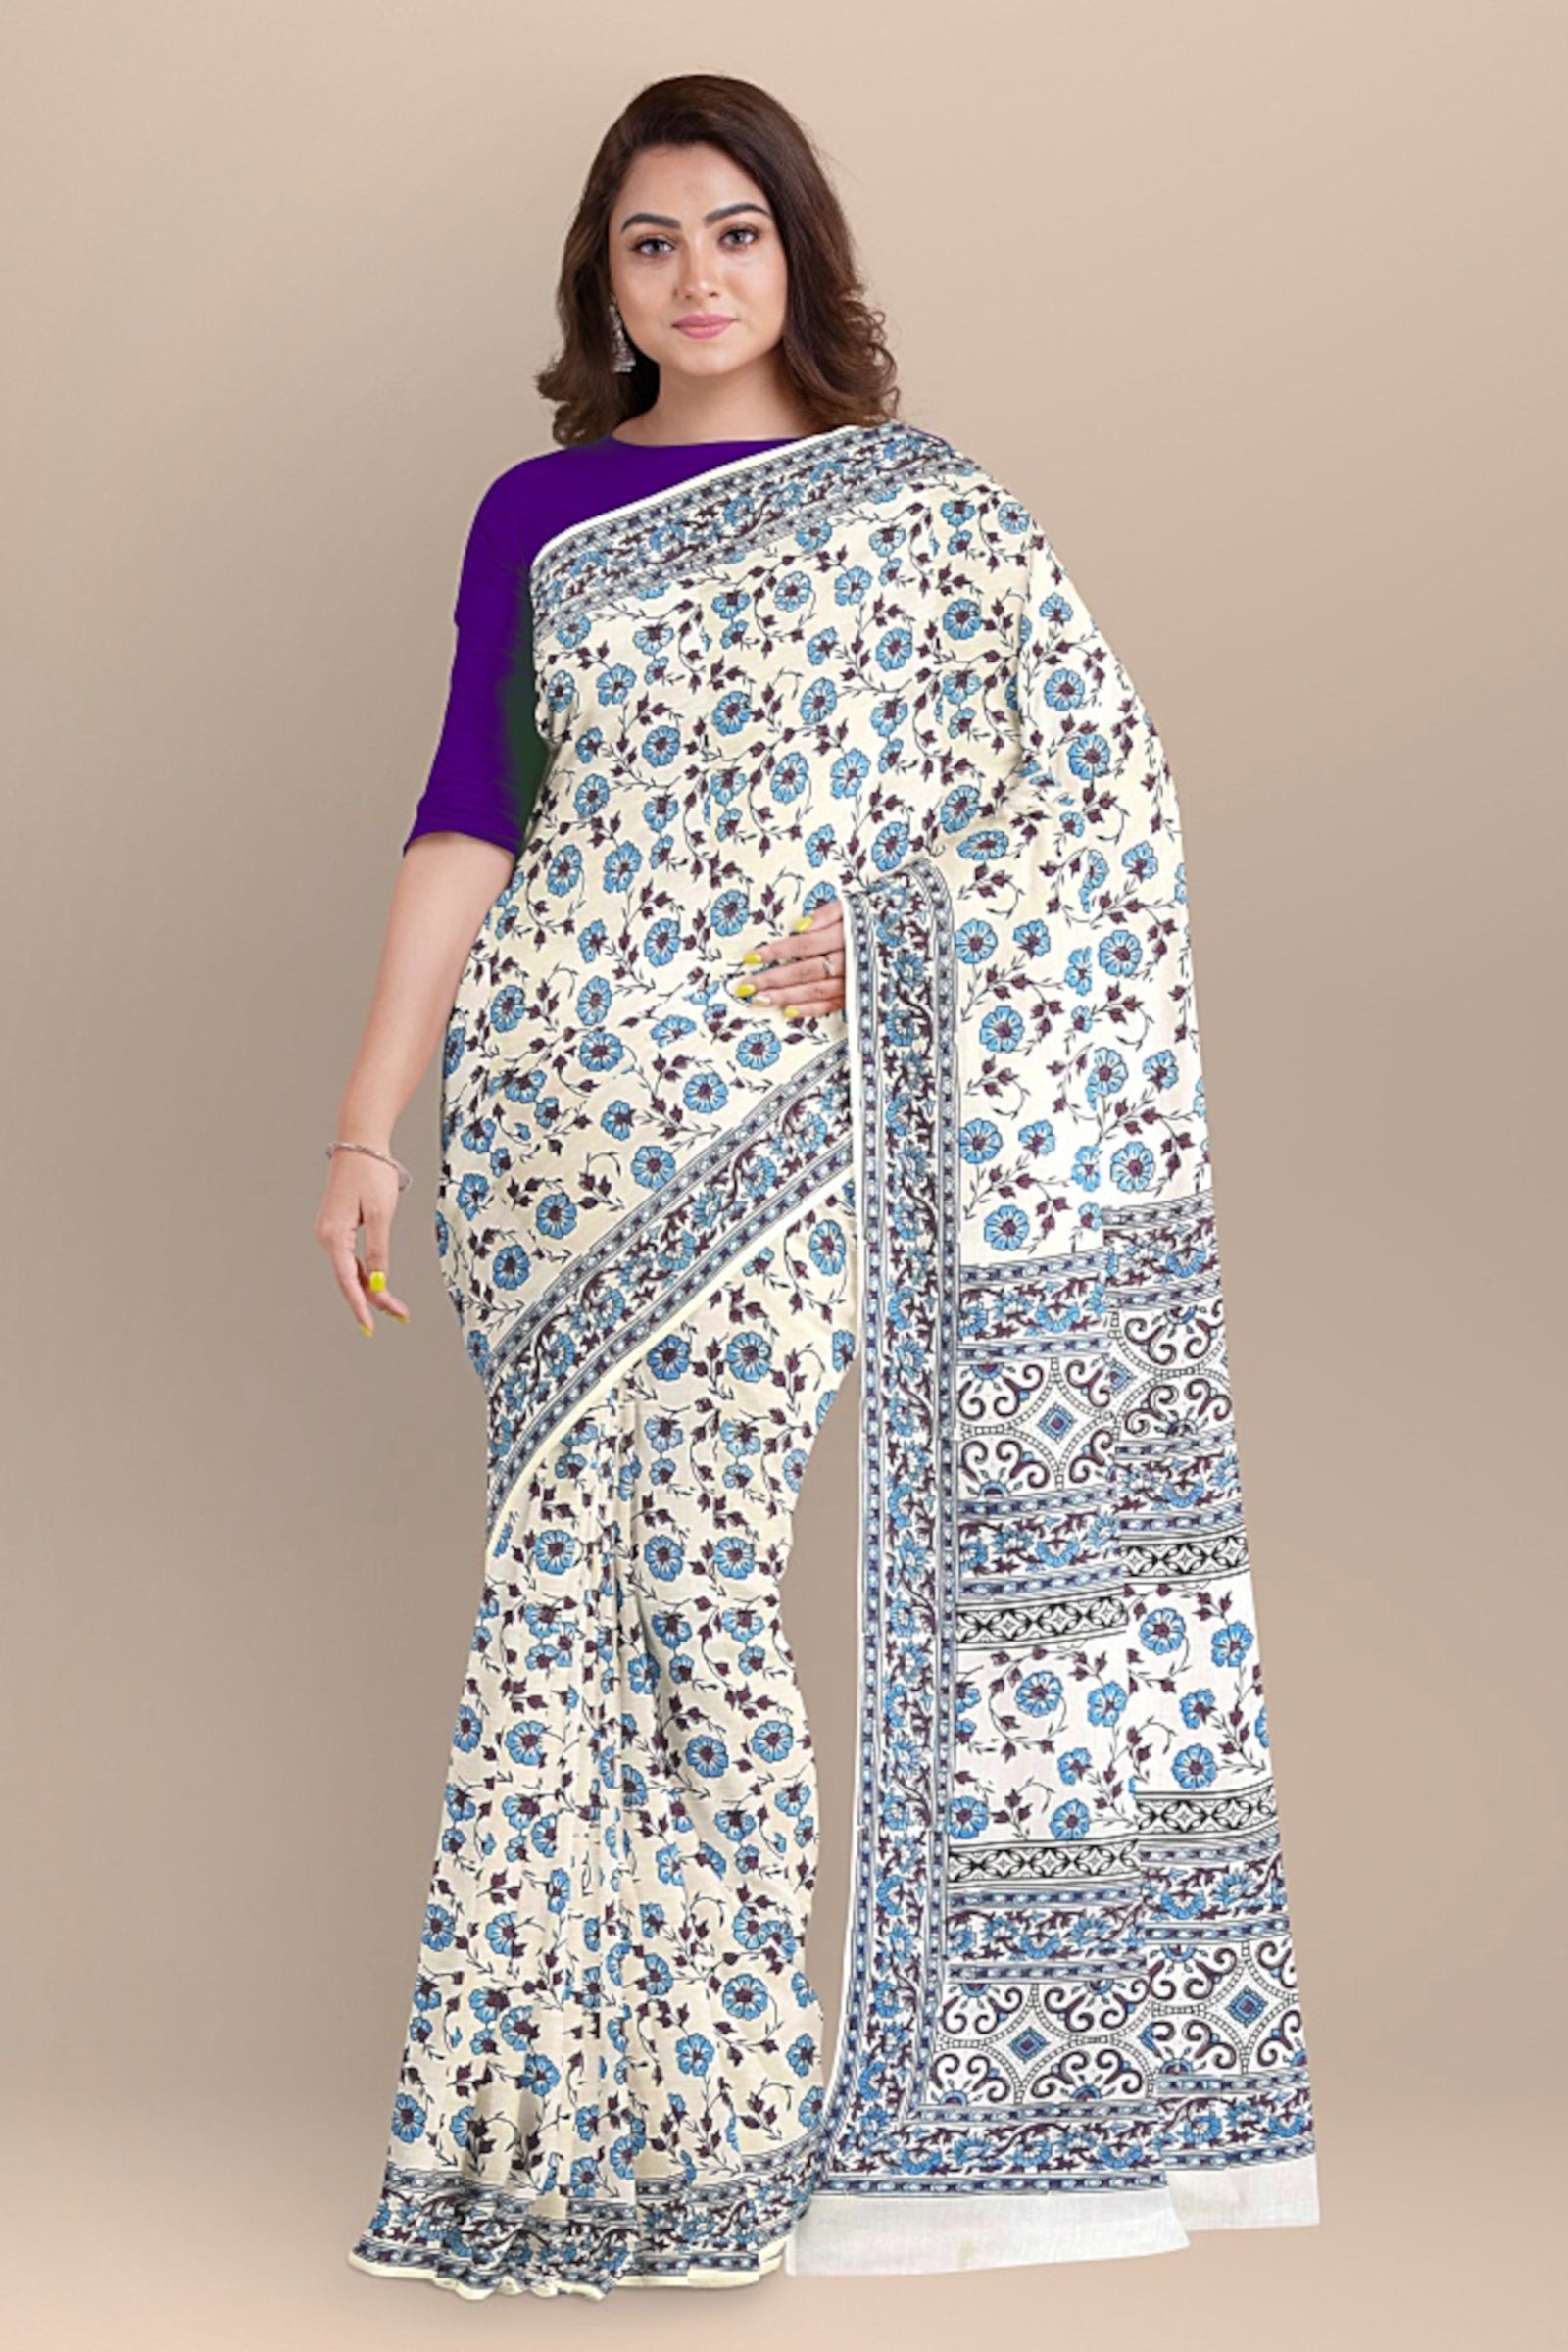 Chhipa Hand Block Printed White Color Malmal Cotton Saree With Floral Motif SKU-5587 - Bhartiya Shilp